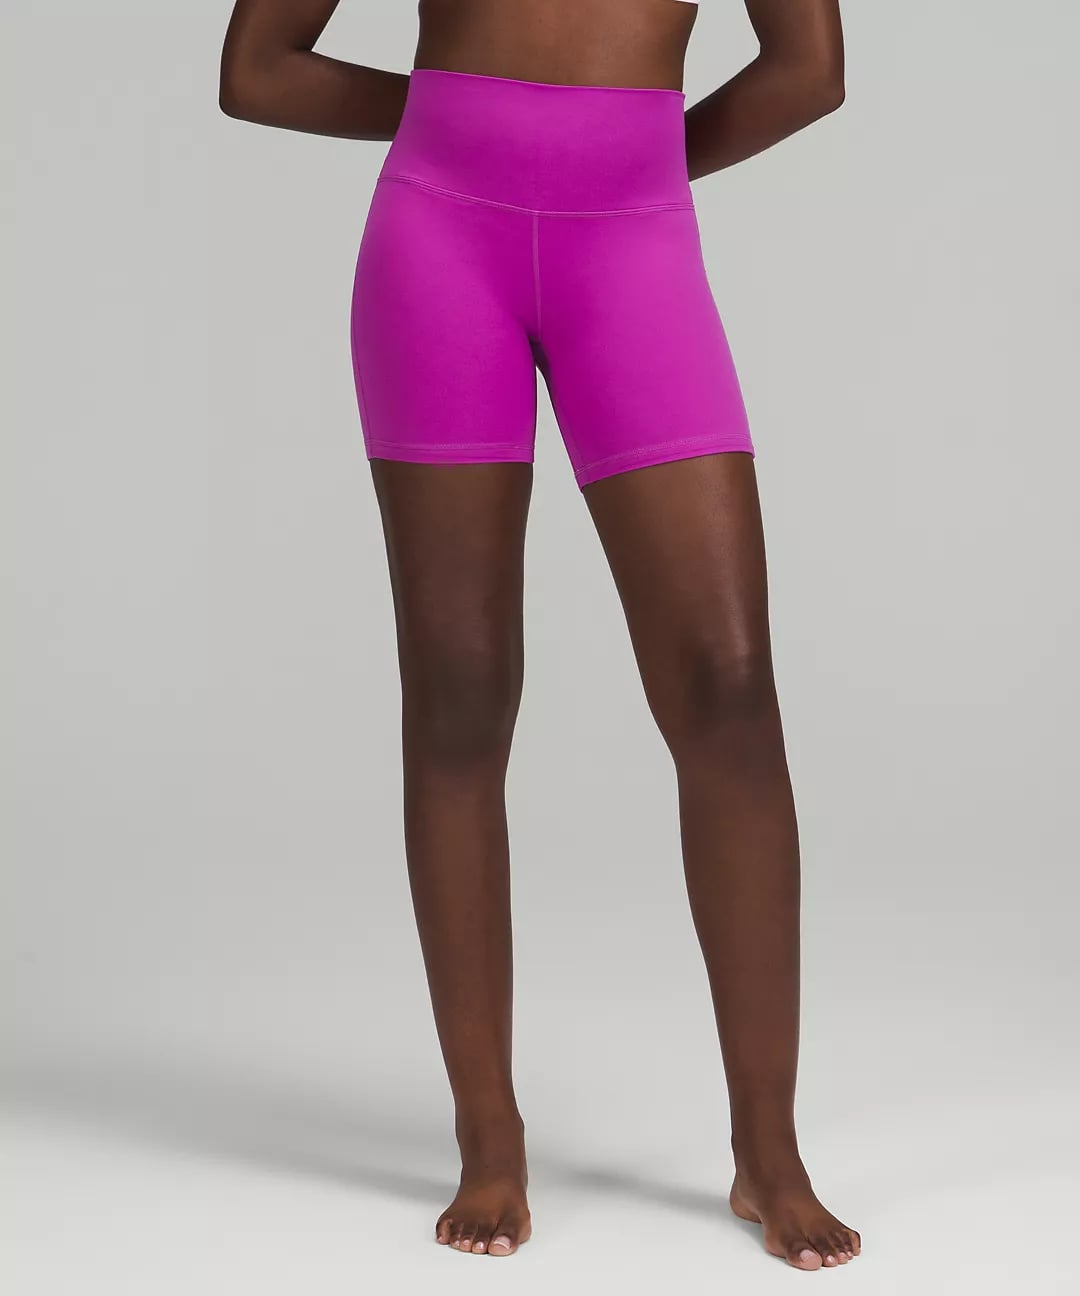 Lululemon Align™ Super-High-Rise Short 6, Women's Shorts